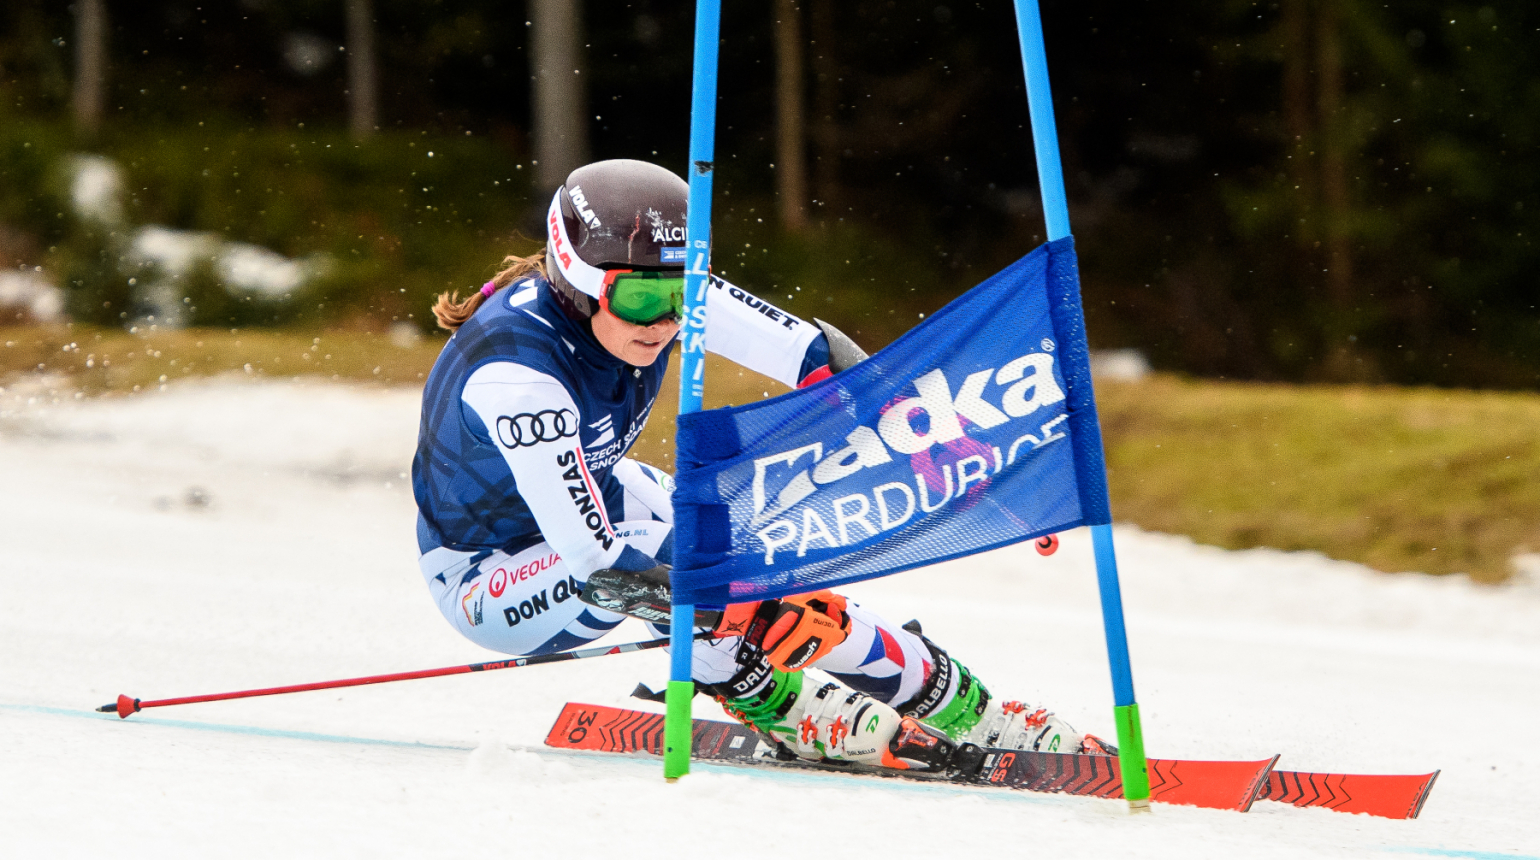 Makám dál, věřím, že to příští rok bude lepší, hlásí po sezóně mistryně ČR v obřím slalomu Adriana Jelínková